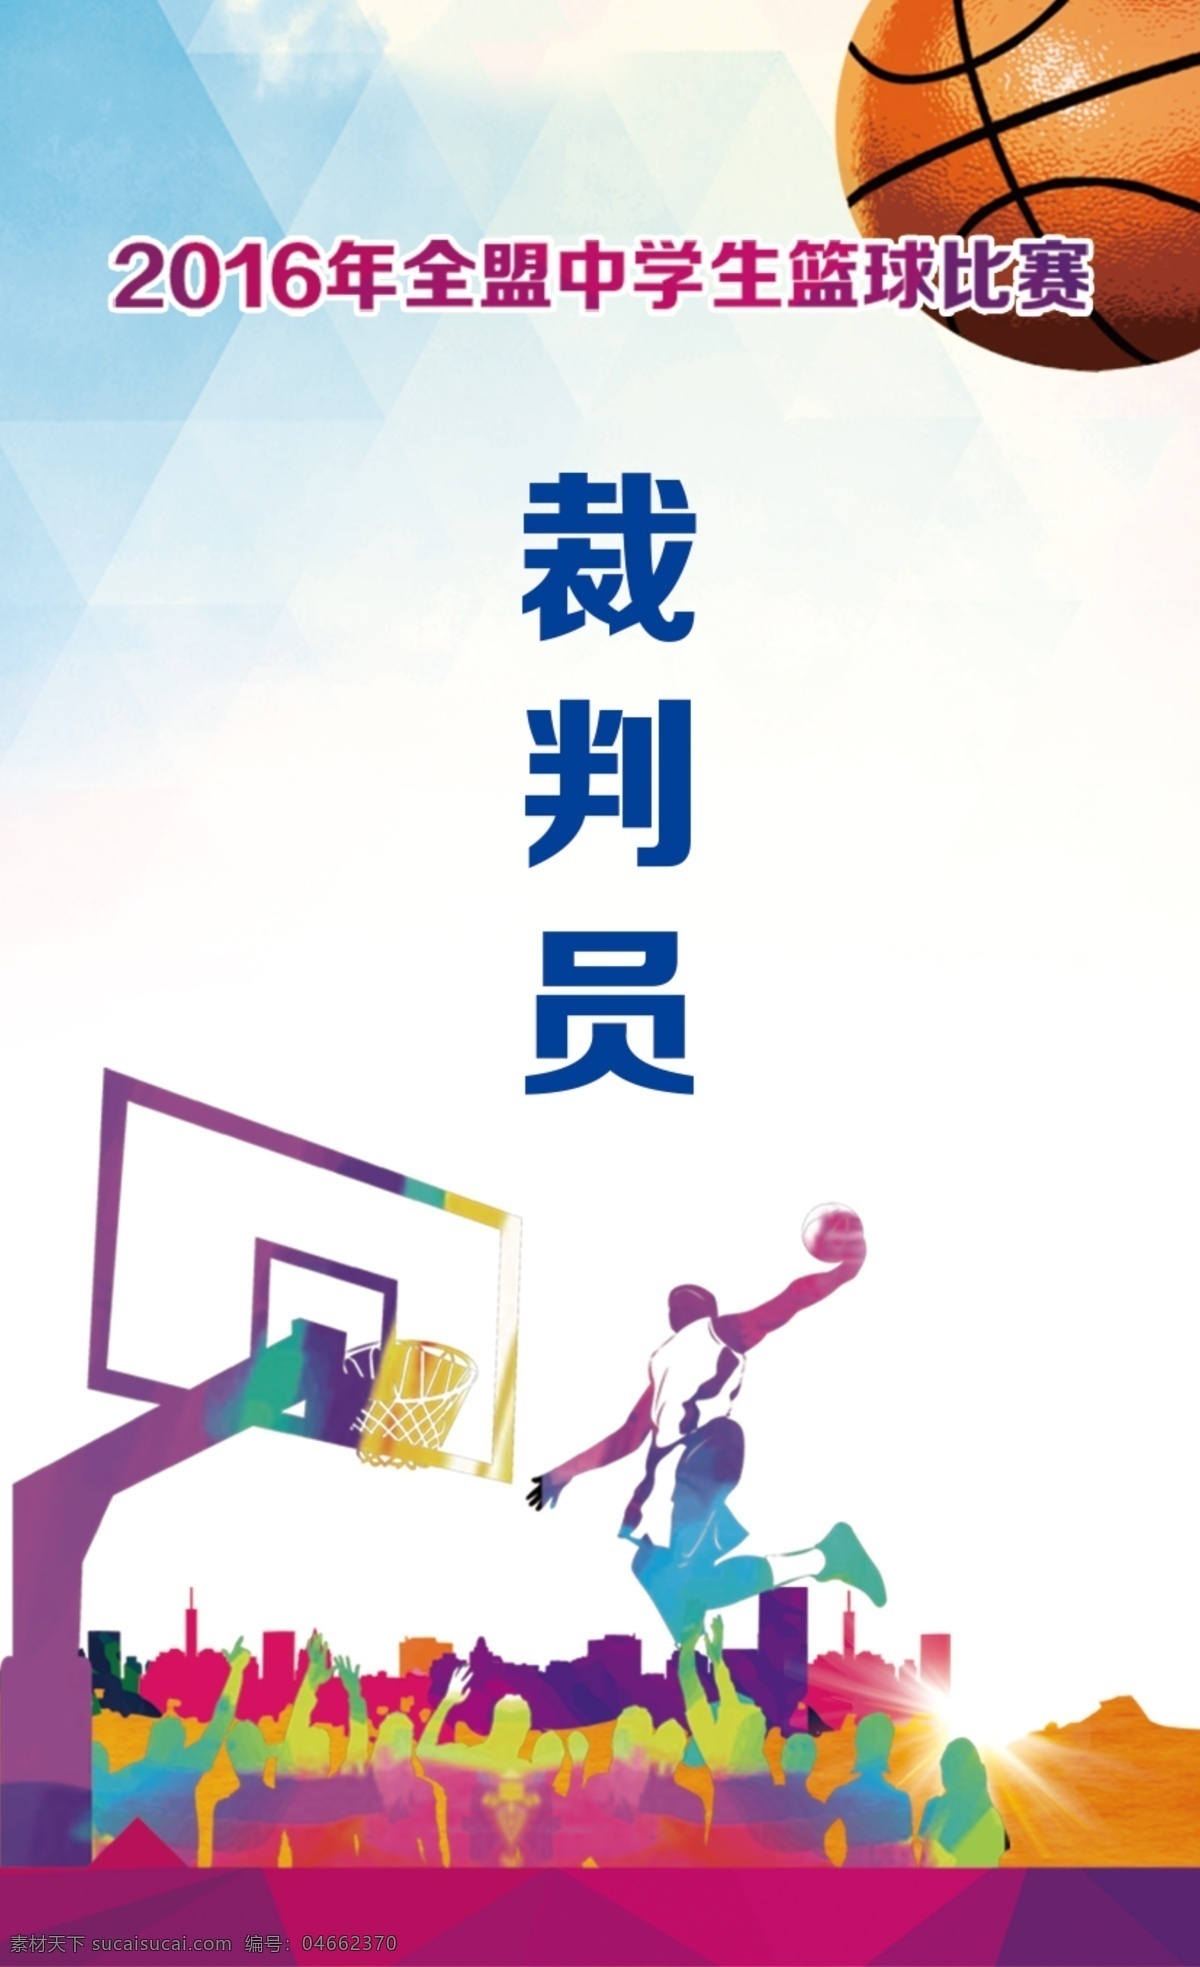 篮球胸卡 胸卡 篮球广告 篮球 海报